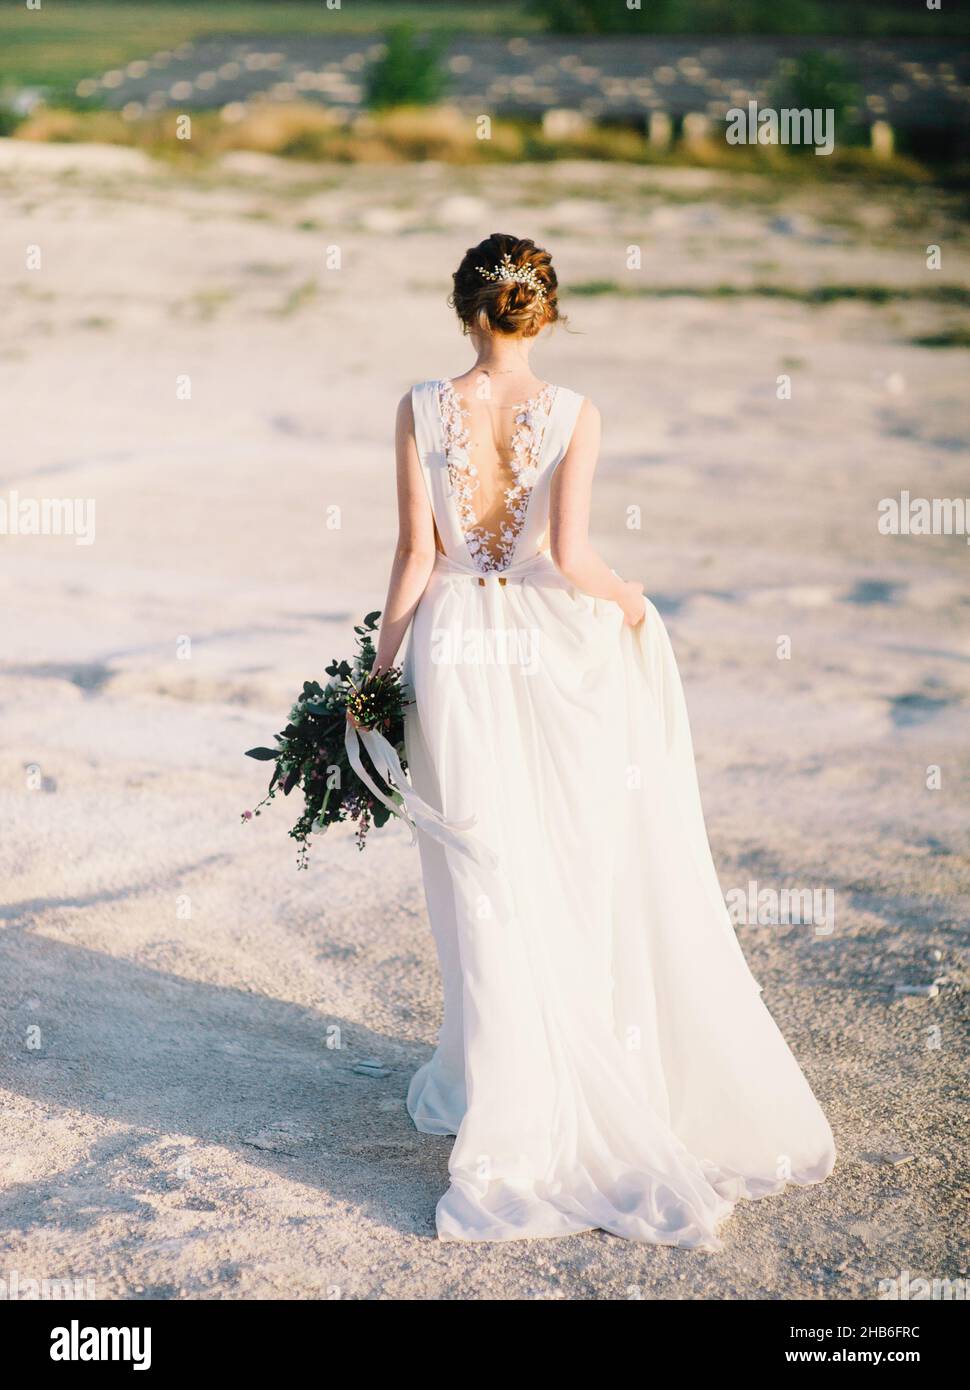 Mariage dans le désert, coucher de soleil, heure d'or.Yong mariée en robe de dentelle blanche va dans le désert et gardant le bouquet de mariage avec des fleurs tendres. Banque D'Images